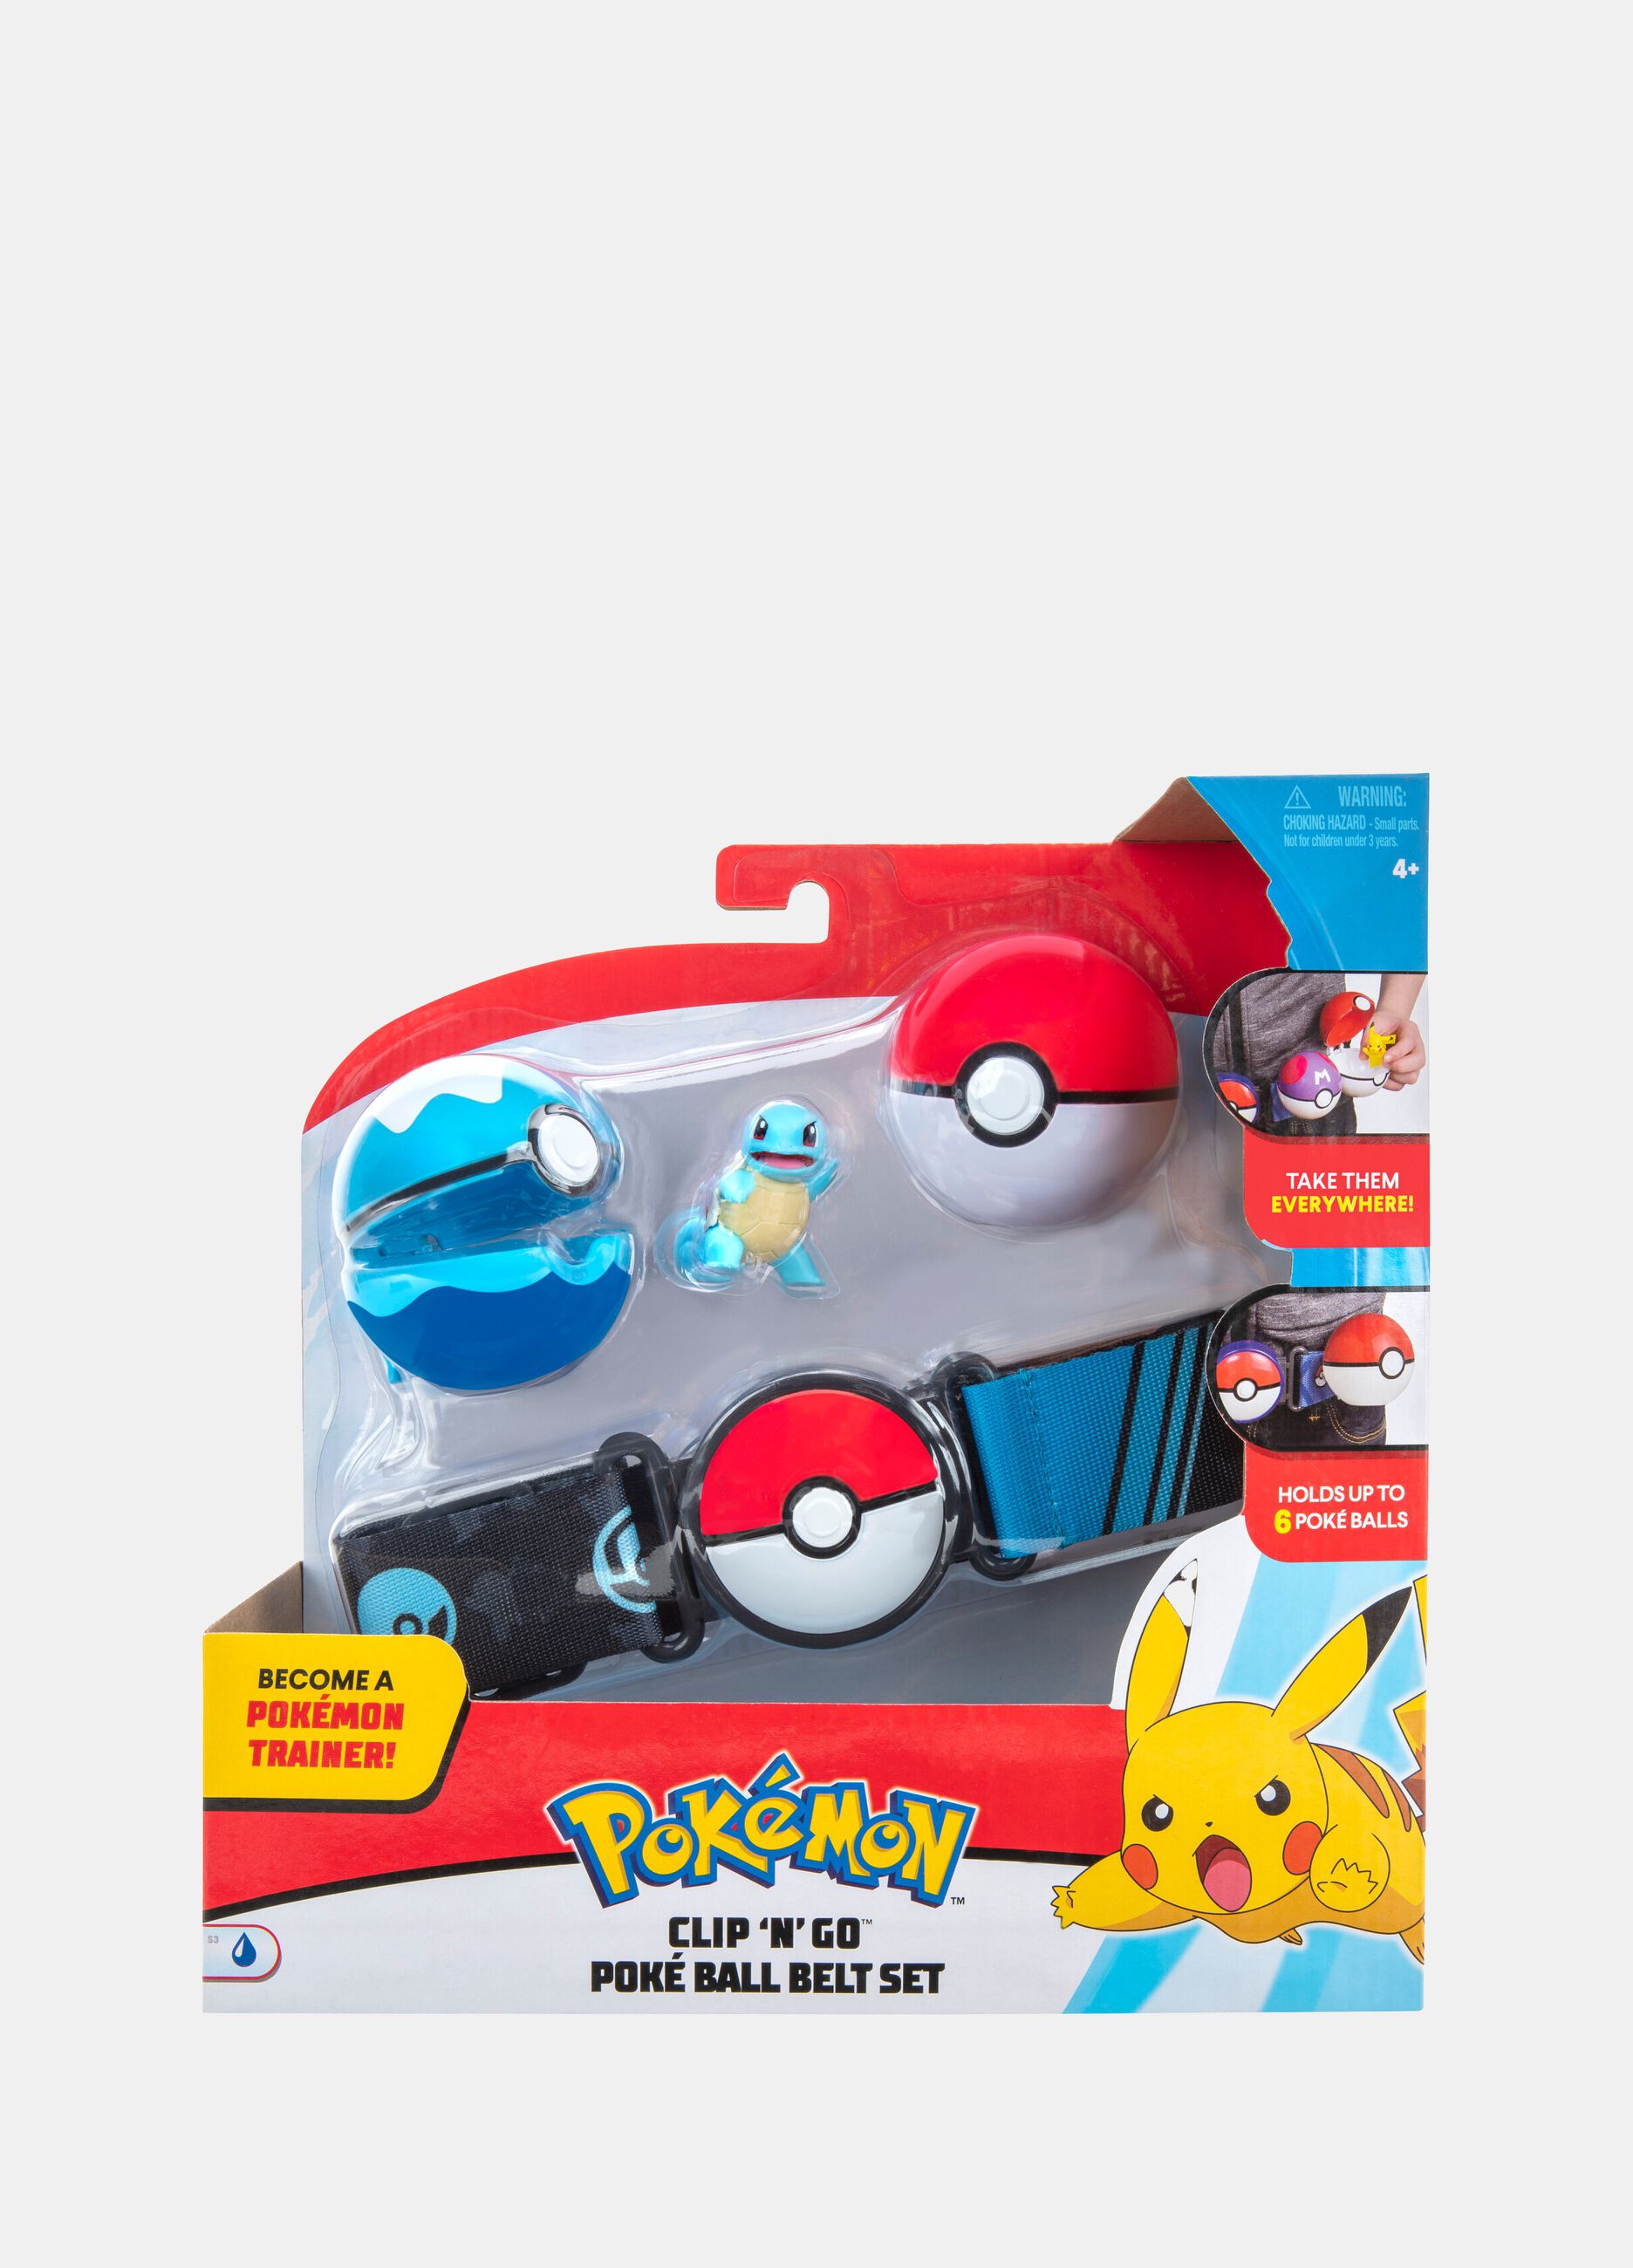 Pokémon Pikachu Clip 'n' Go Poké Ball belt set